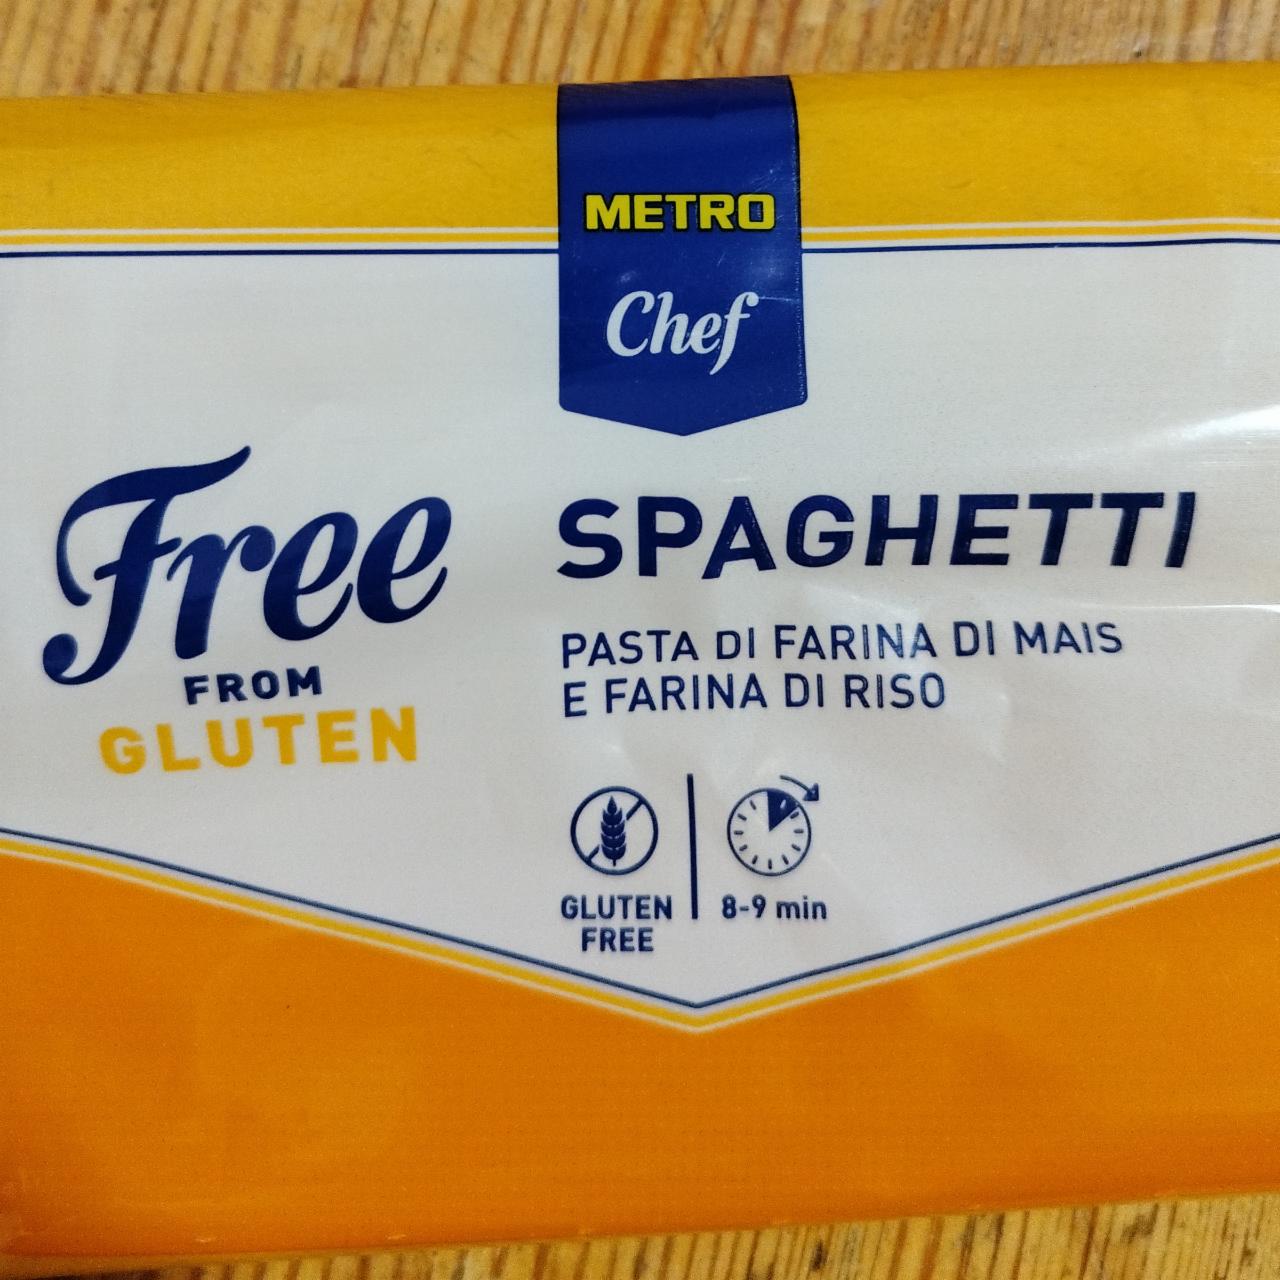 Fotografie - Spaghetti Free from gluten Metro Chef